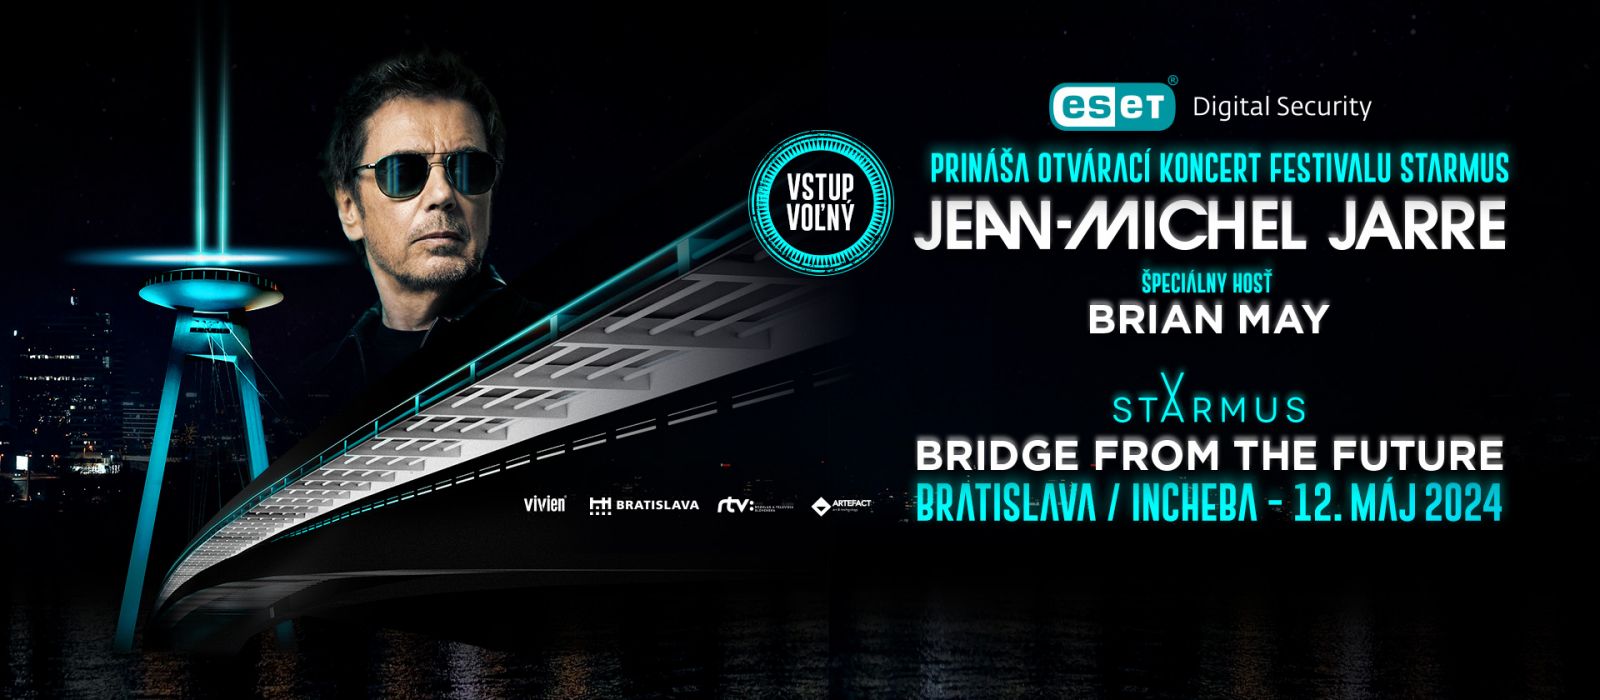 Podrobné informácie a inštrukcie: Otvárací koncert festivalu STARMUS Jean-Michel Jarre a Brian May v Bratislave